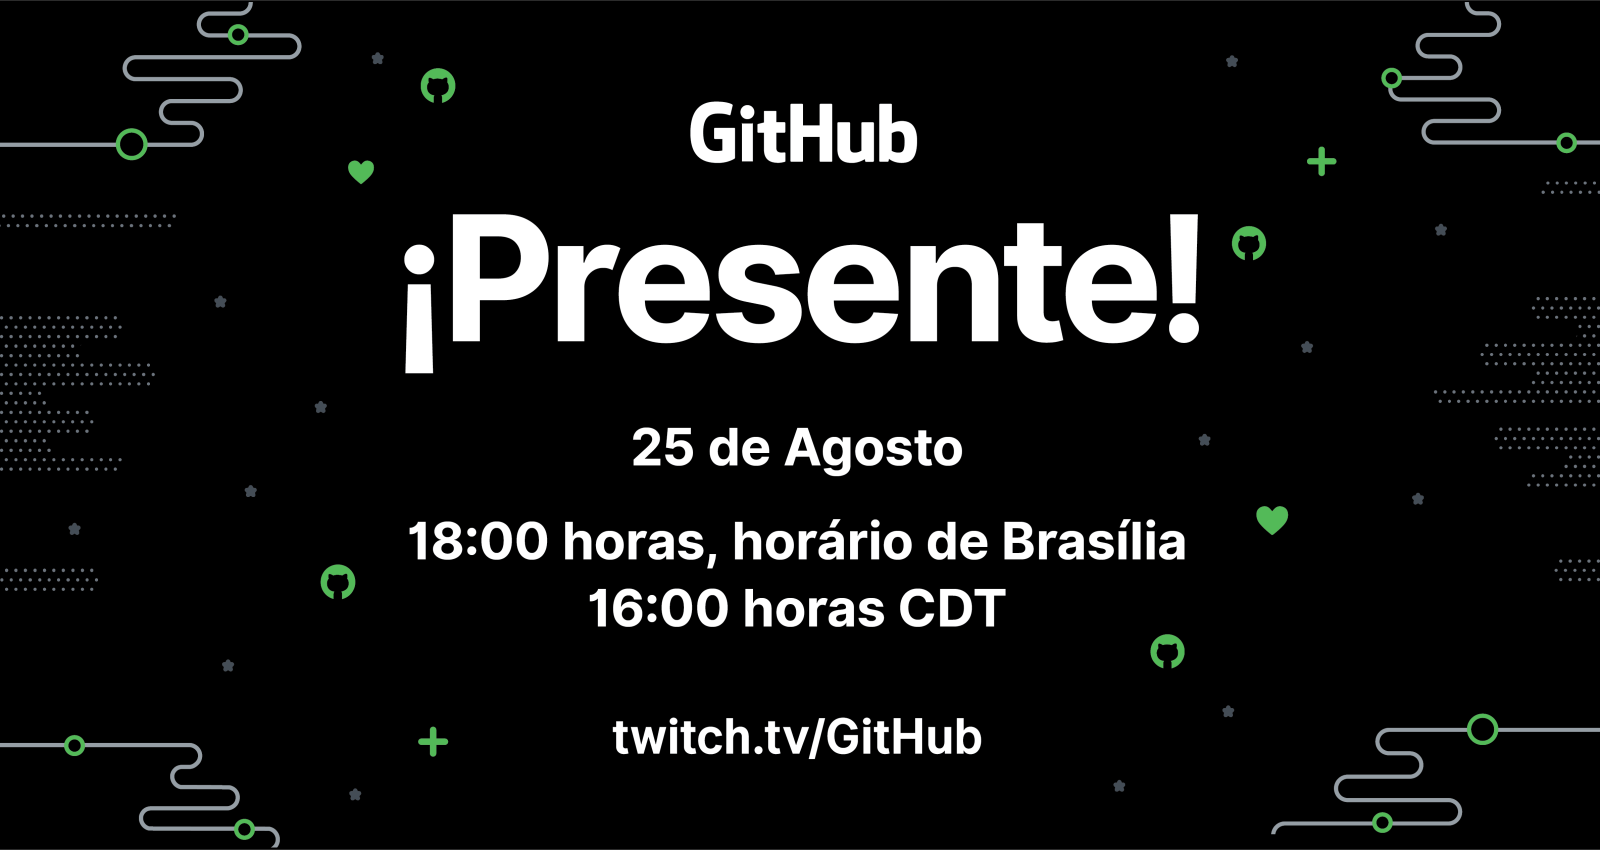 GitHub ¡Presente! na América Latina